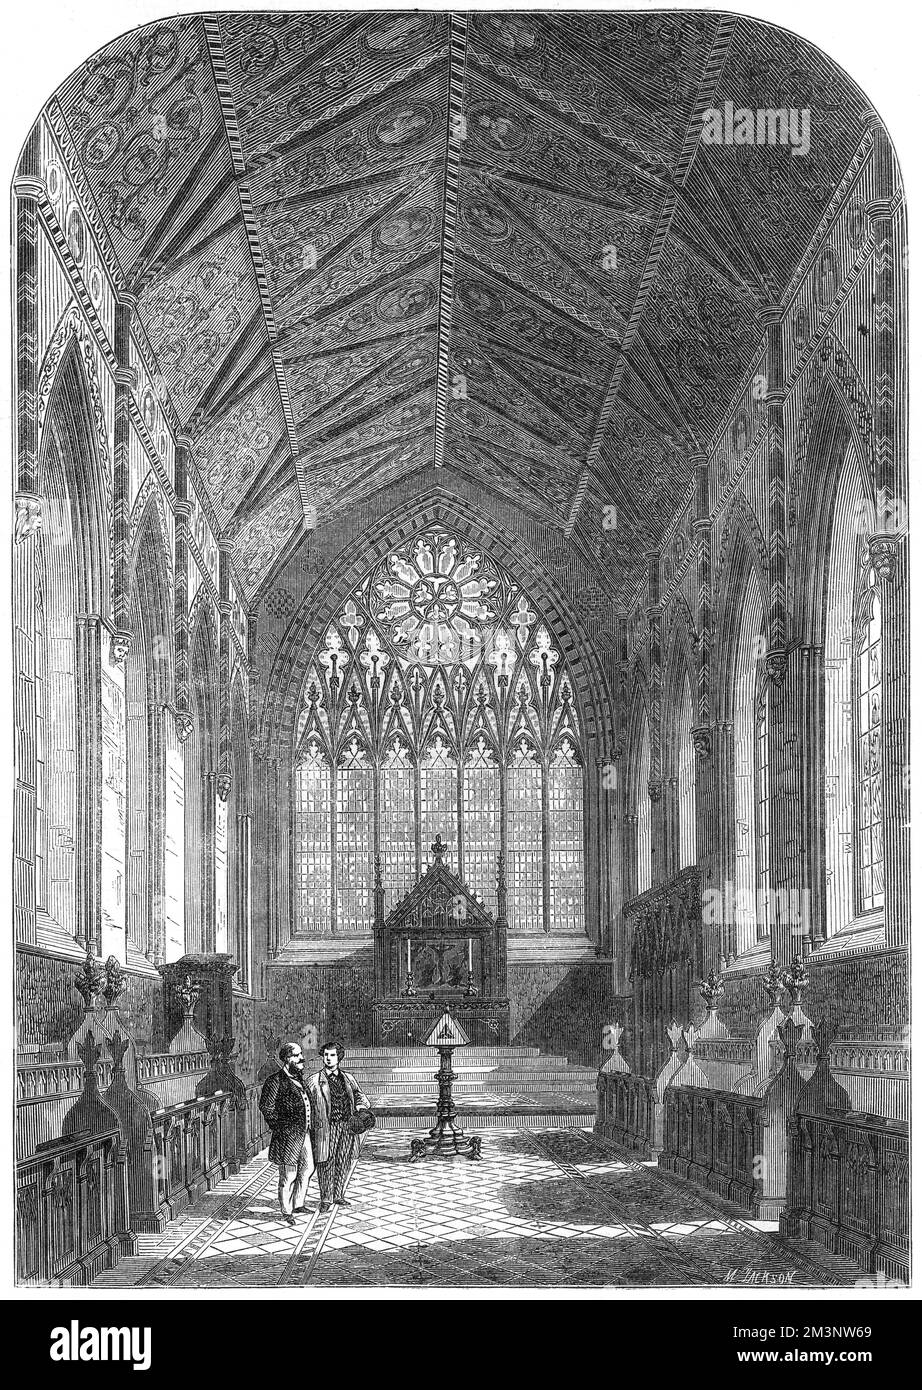 Die Kapelle am Merton College, Oxford, 1864. Dieses Bild erschien als Teil eines Films in den illustrierten London News anlässlich des sechshundertsten Jahrestages der Gründung des Colleges durch Walter de Merton im Jahr 1264. Datum: 1864 Stockfoto